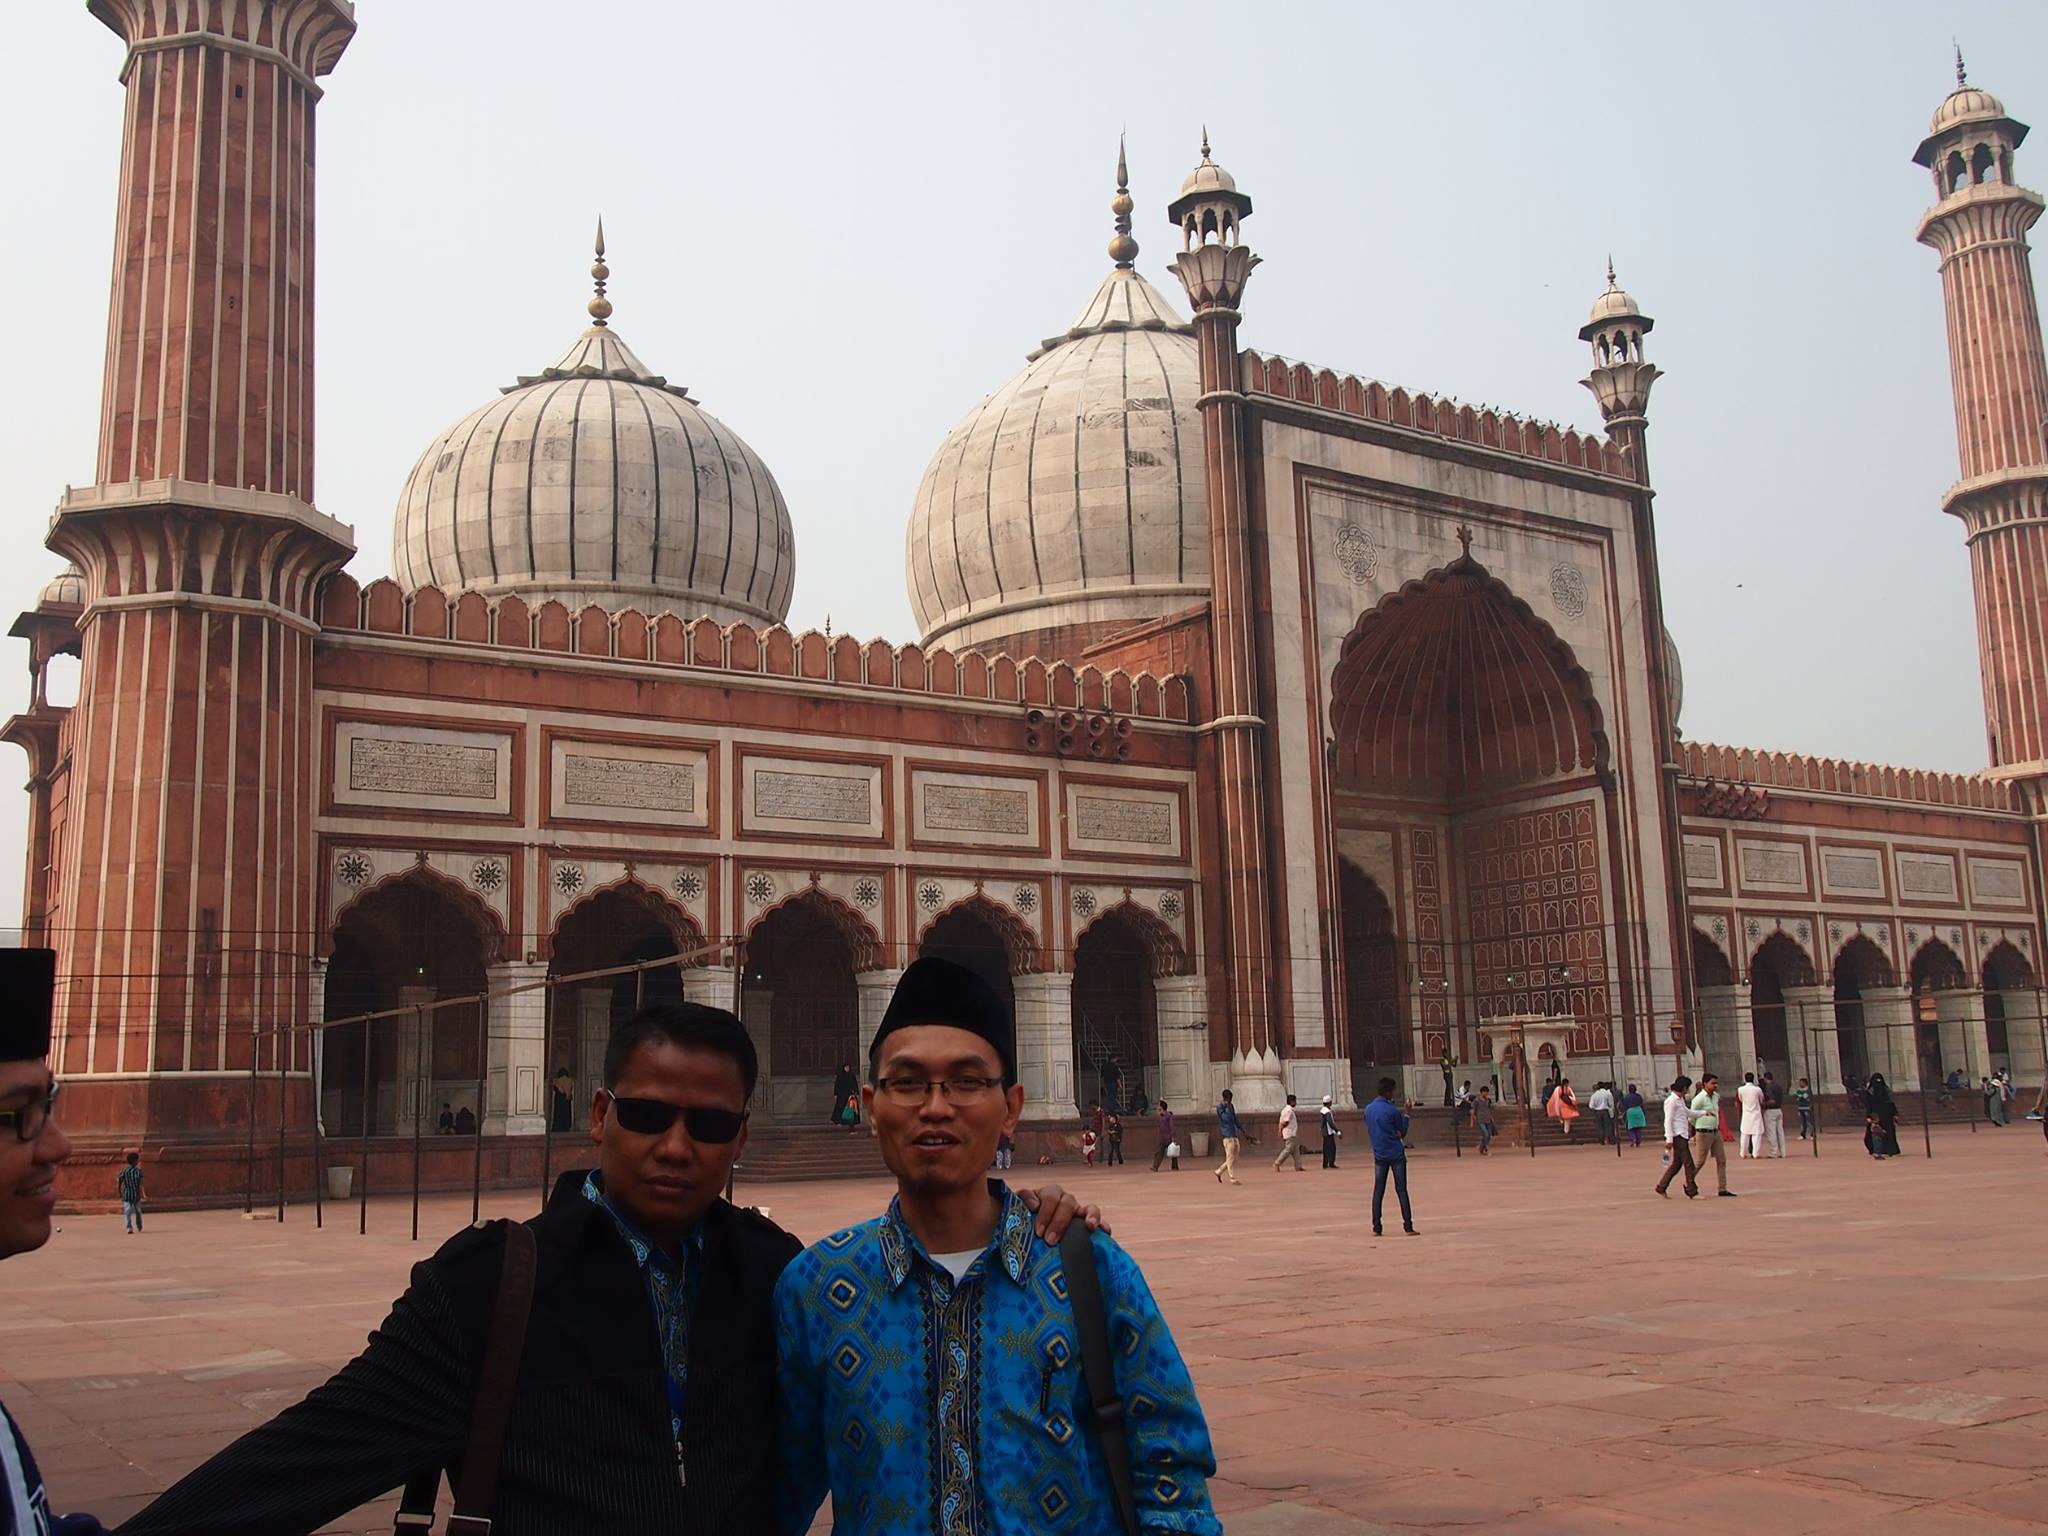 Masjid berperan penting melindungi Umat Islam di India. Editor ngopibareng.id, Riadi bersama Romo Abhaya, ketika berkesempatan berkunjung di Masjid Jama' di Delhi, ibu kota India lama. (Foto: fkub surabaya)